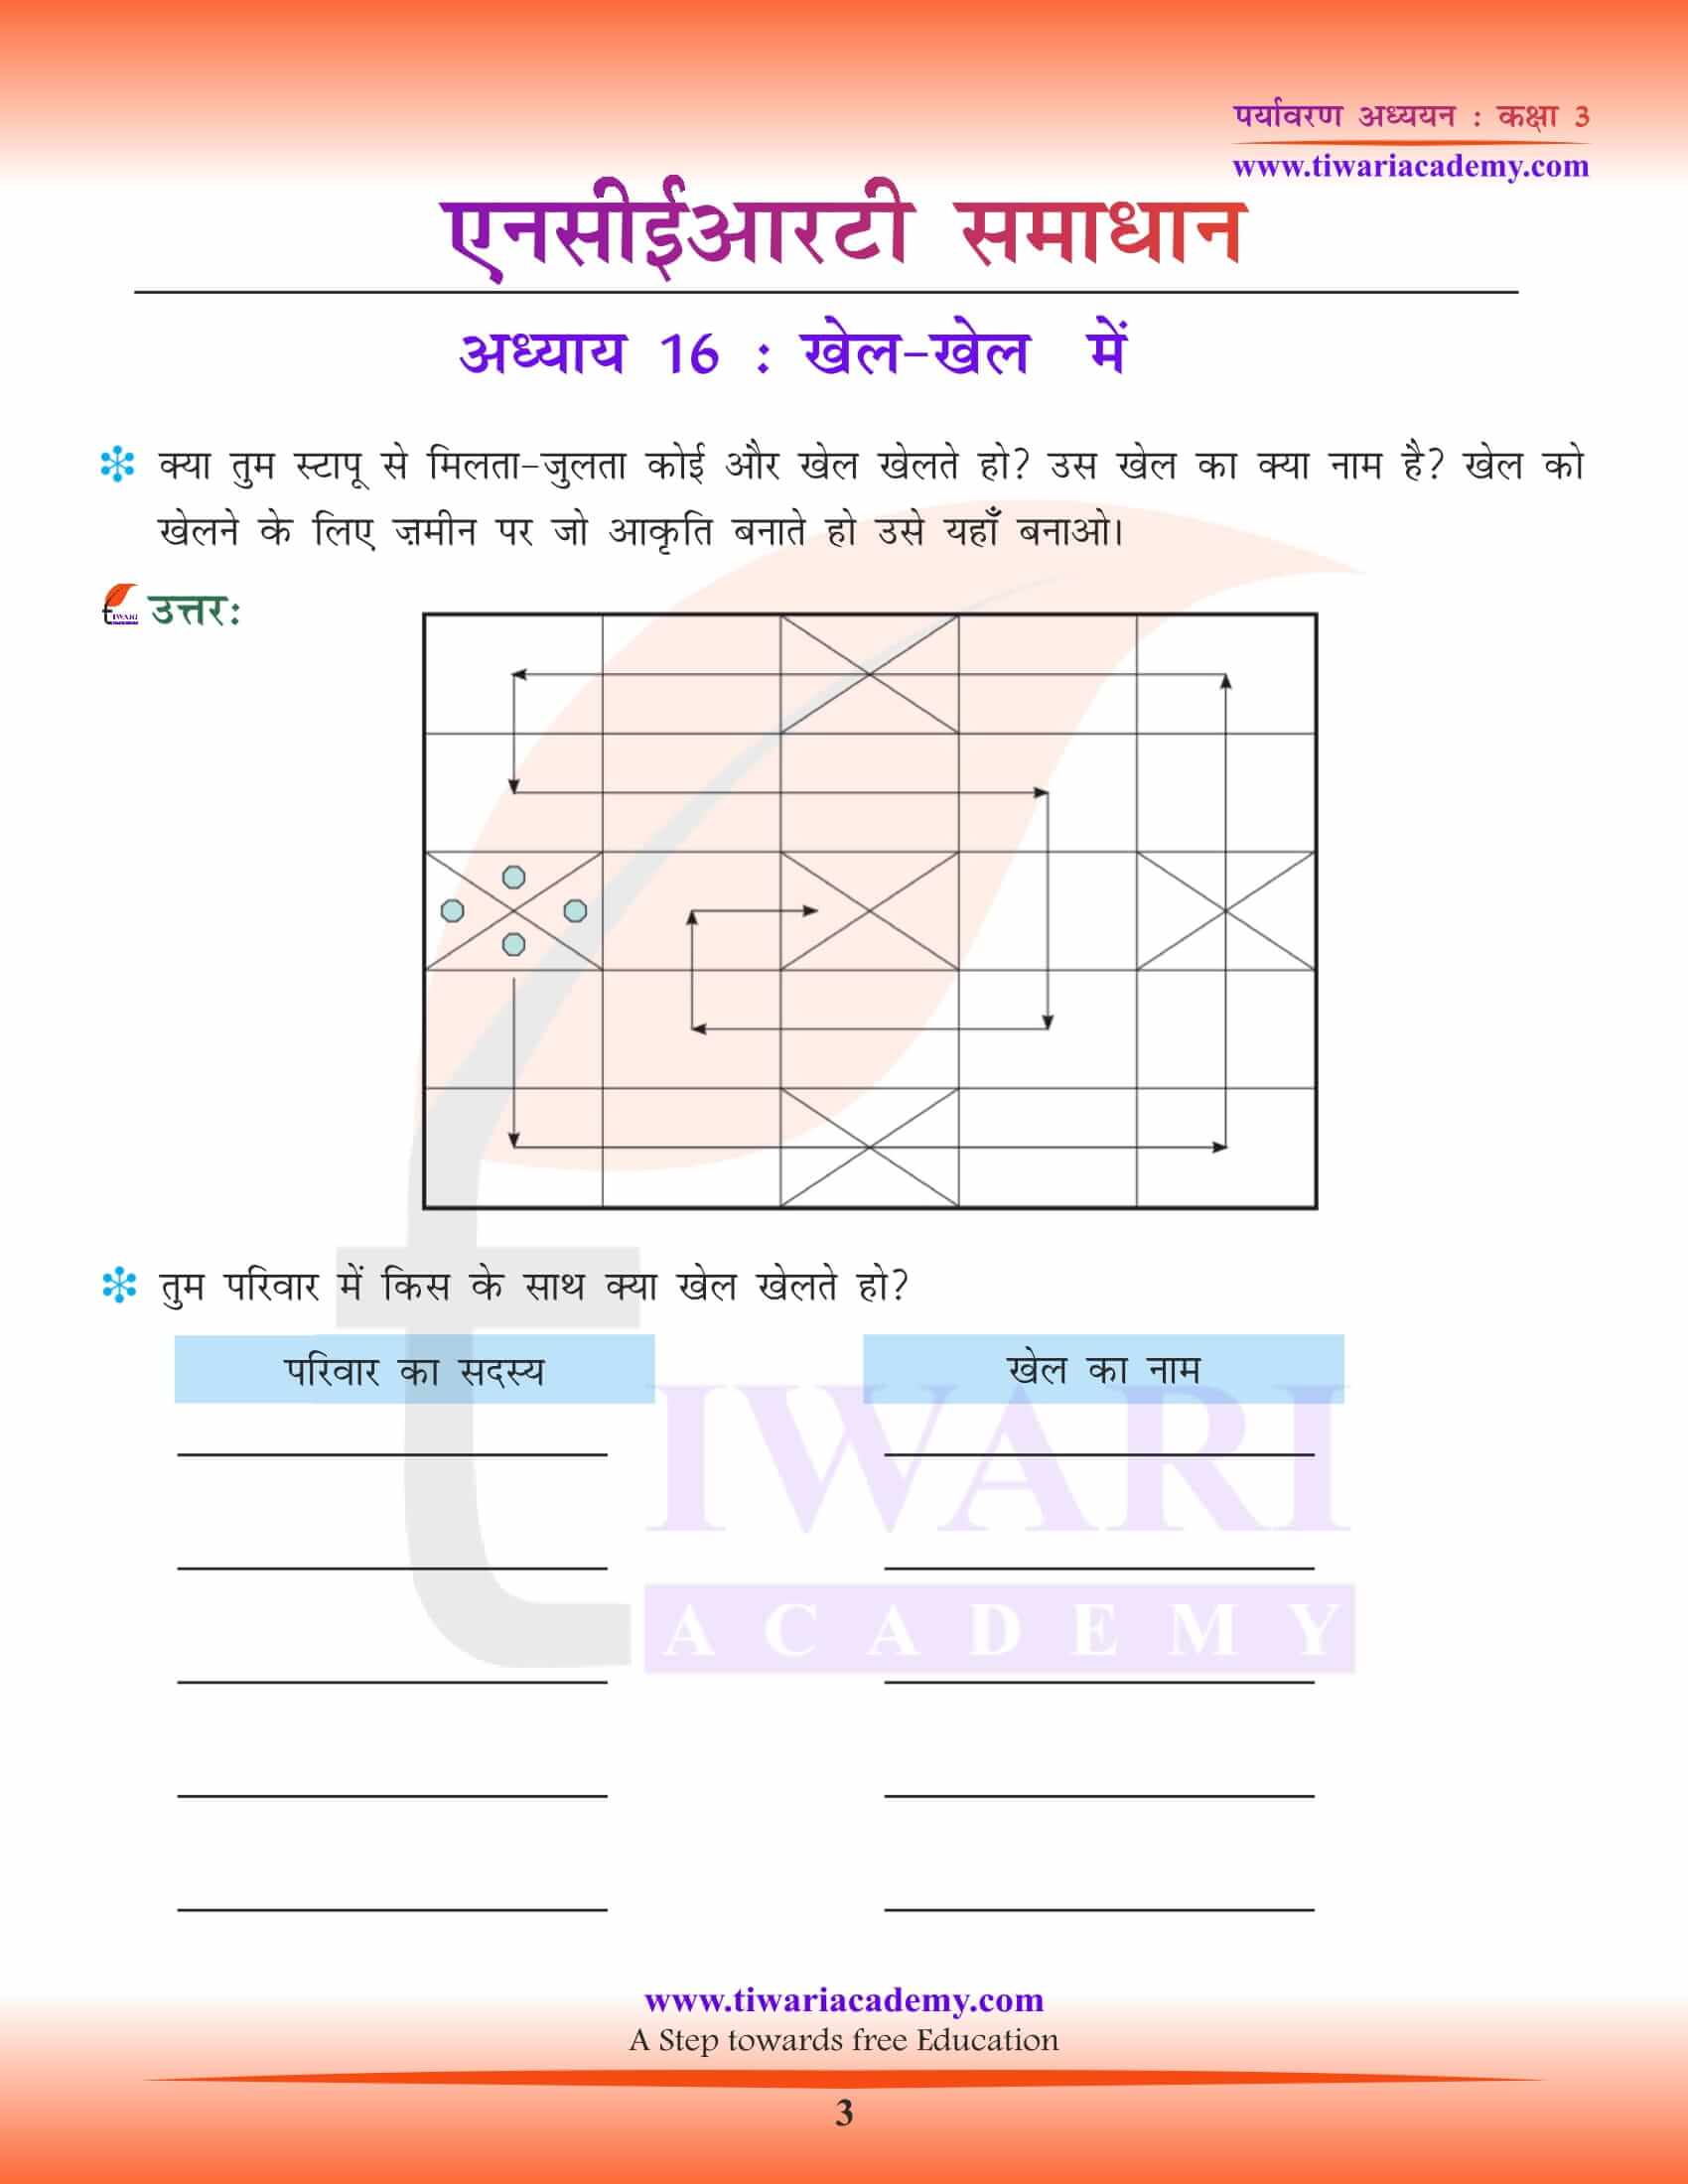 एनसीईआरटी समाधान कक्षा 3 ईवीएस अध्याय 16 हिंदी में